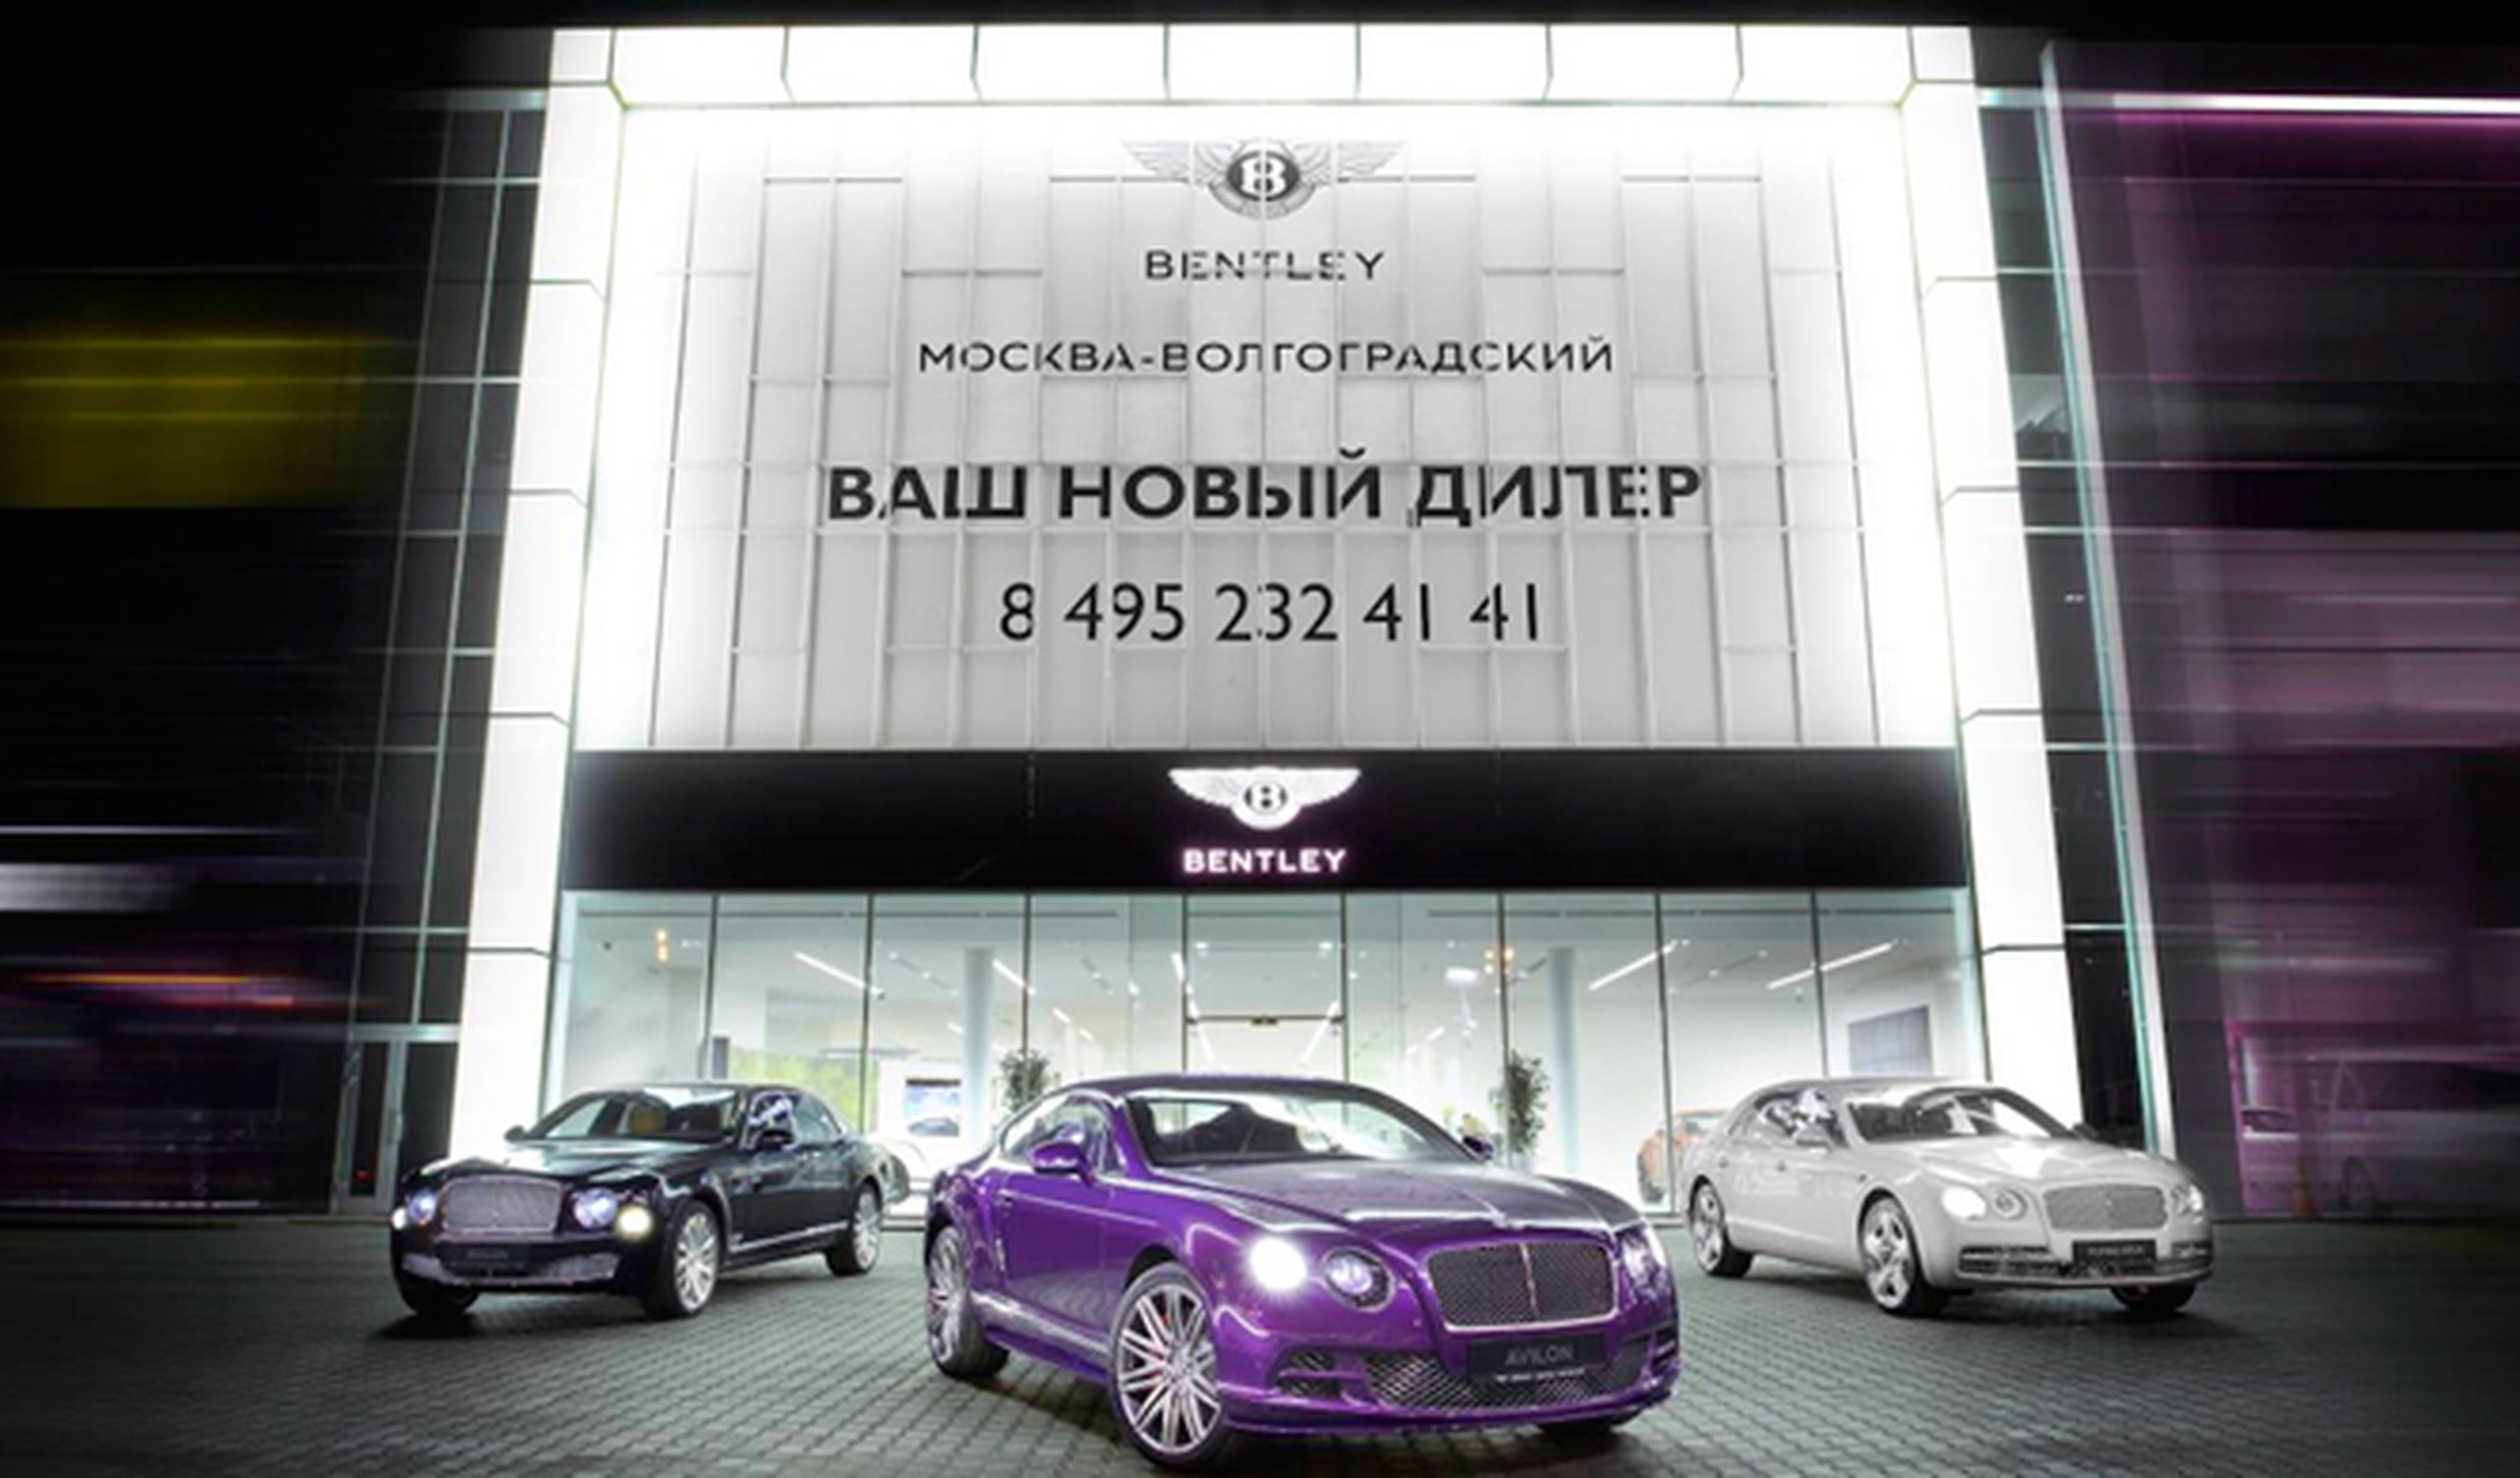 ¿Dónde ha abierto Bentley un nuevo concesionario?